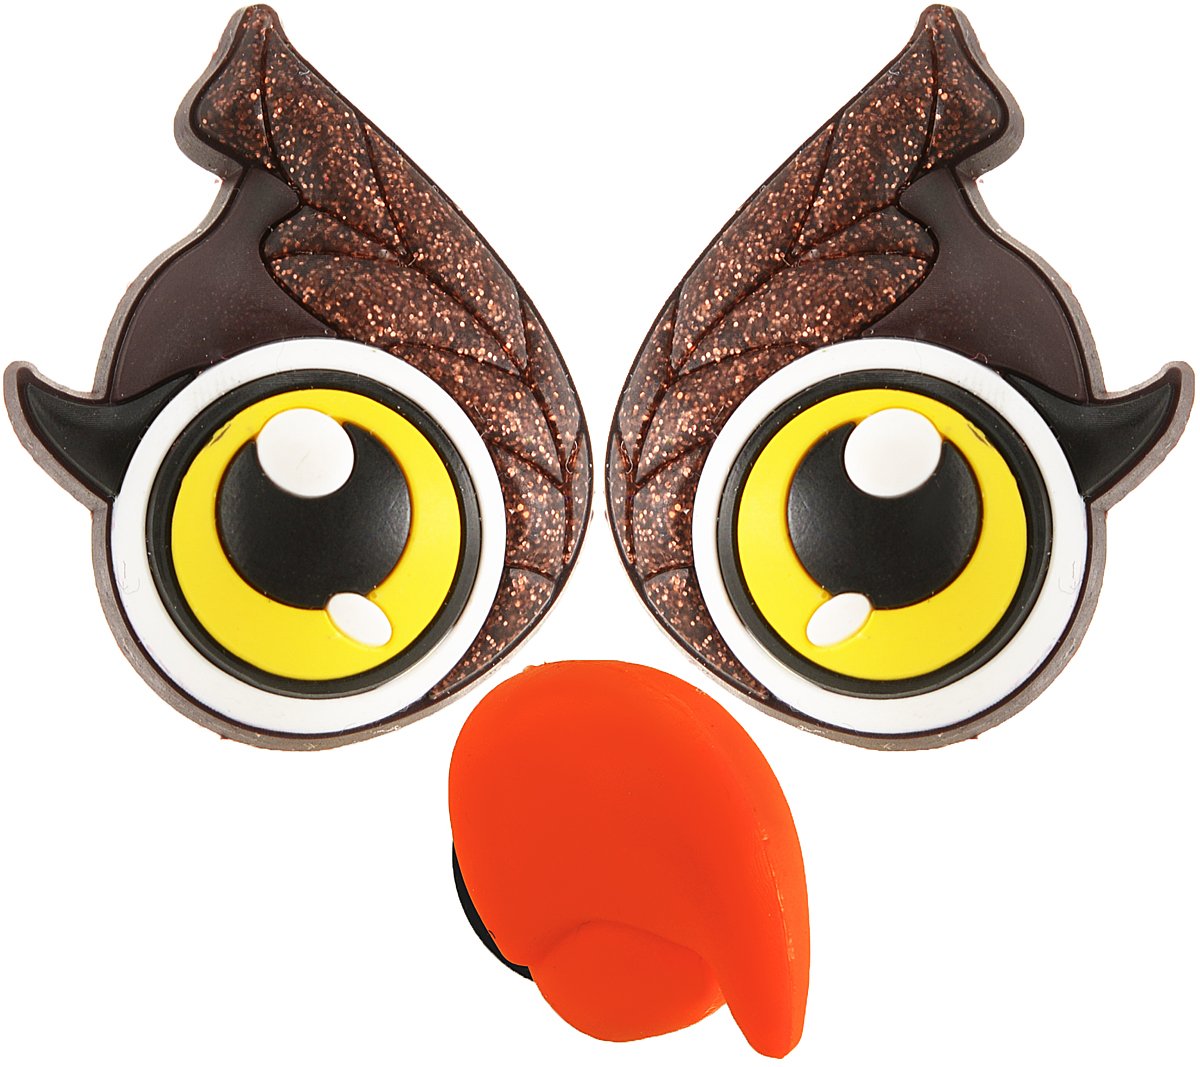 фото Джибитсы Crocs Jibbitz CAC Owl Crt-A-Clg Dcls Pk-Card, цвет: коричневый. 3000023-01460-0001